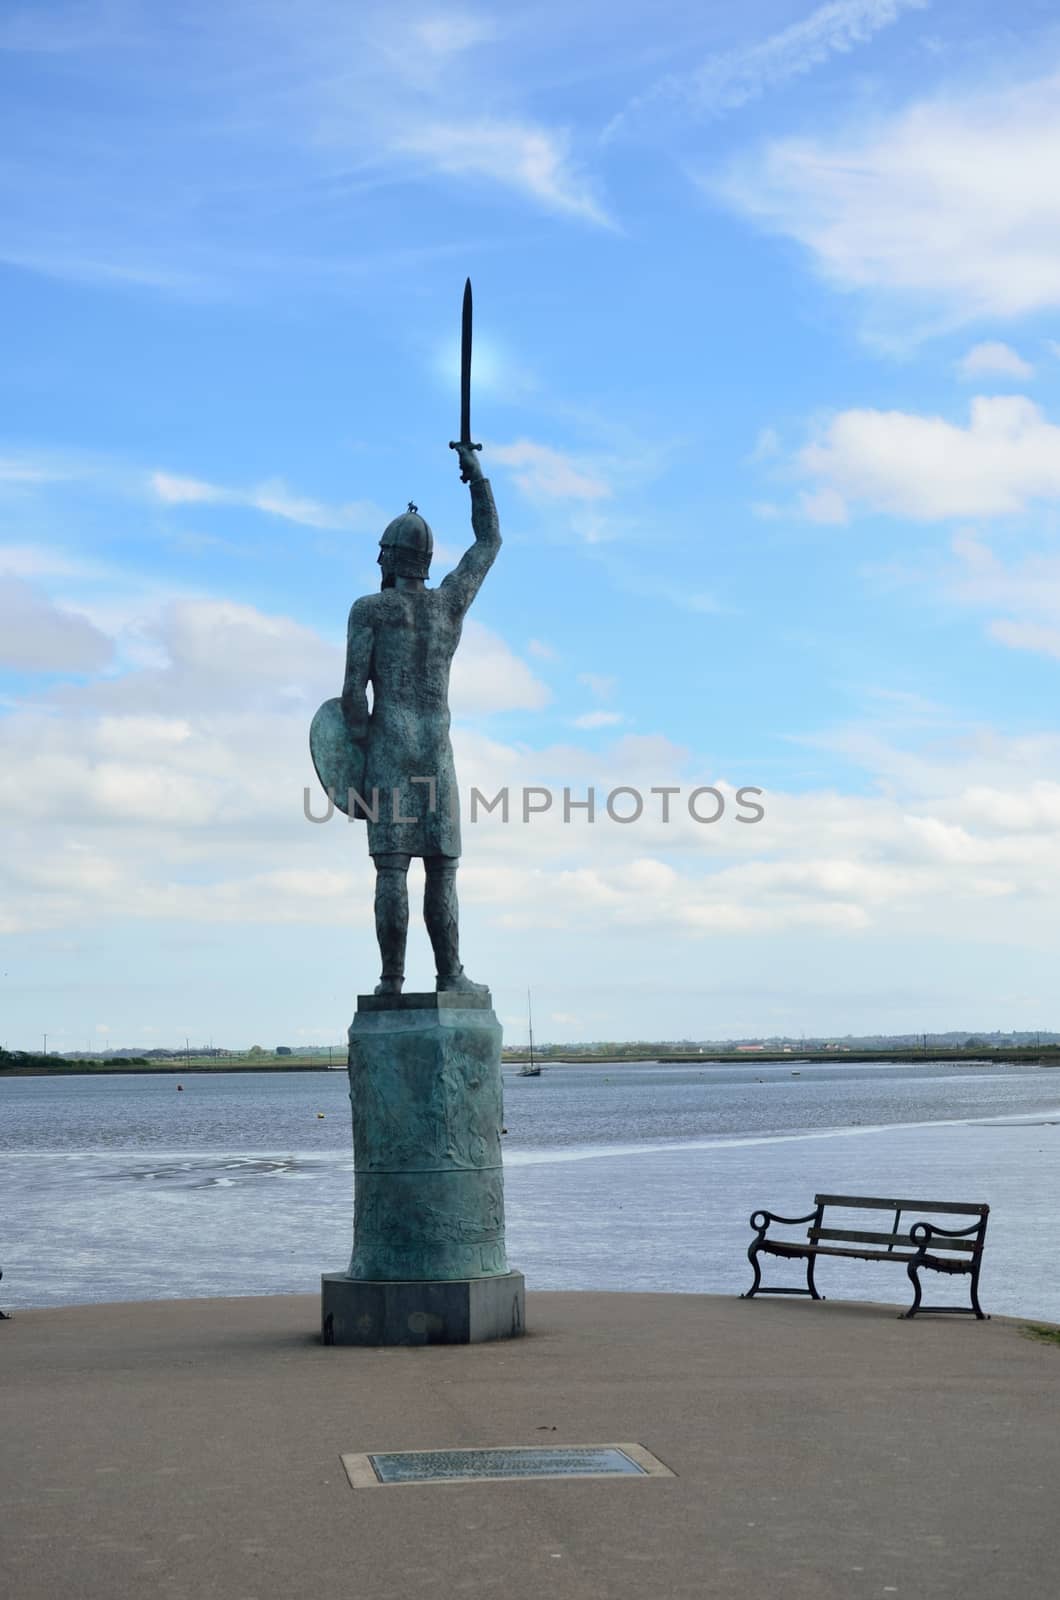 Statue of Warrior overlooking River